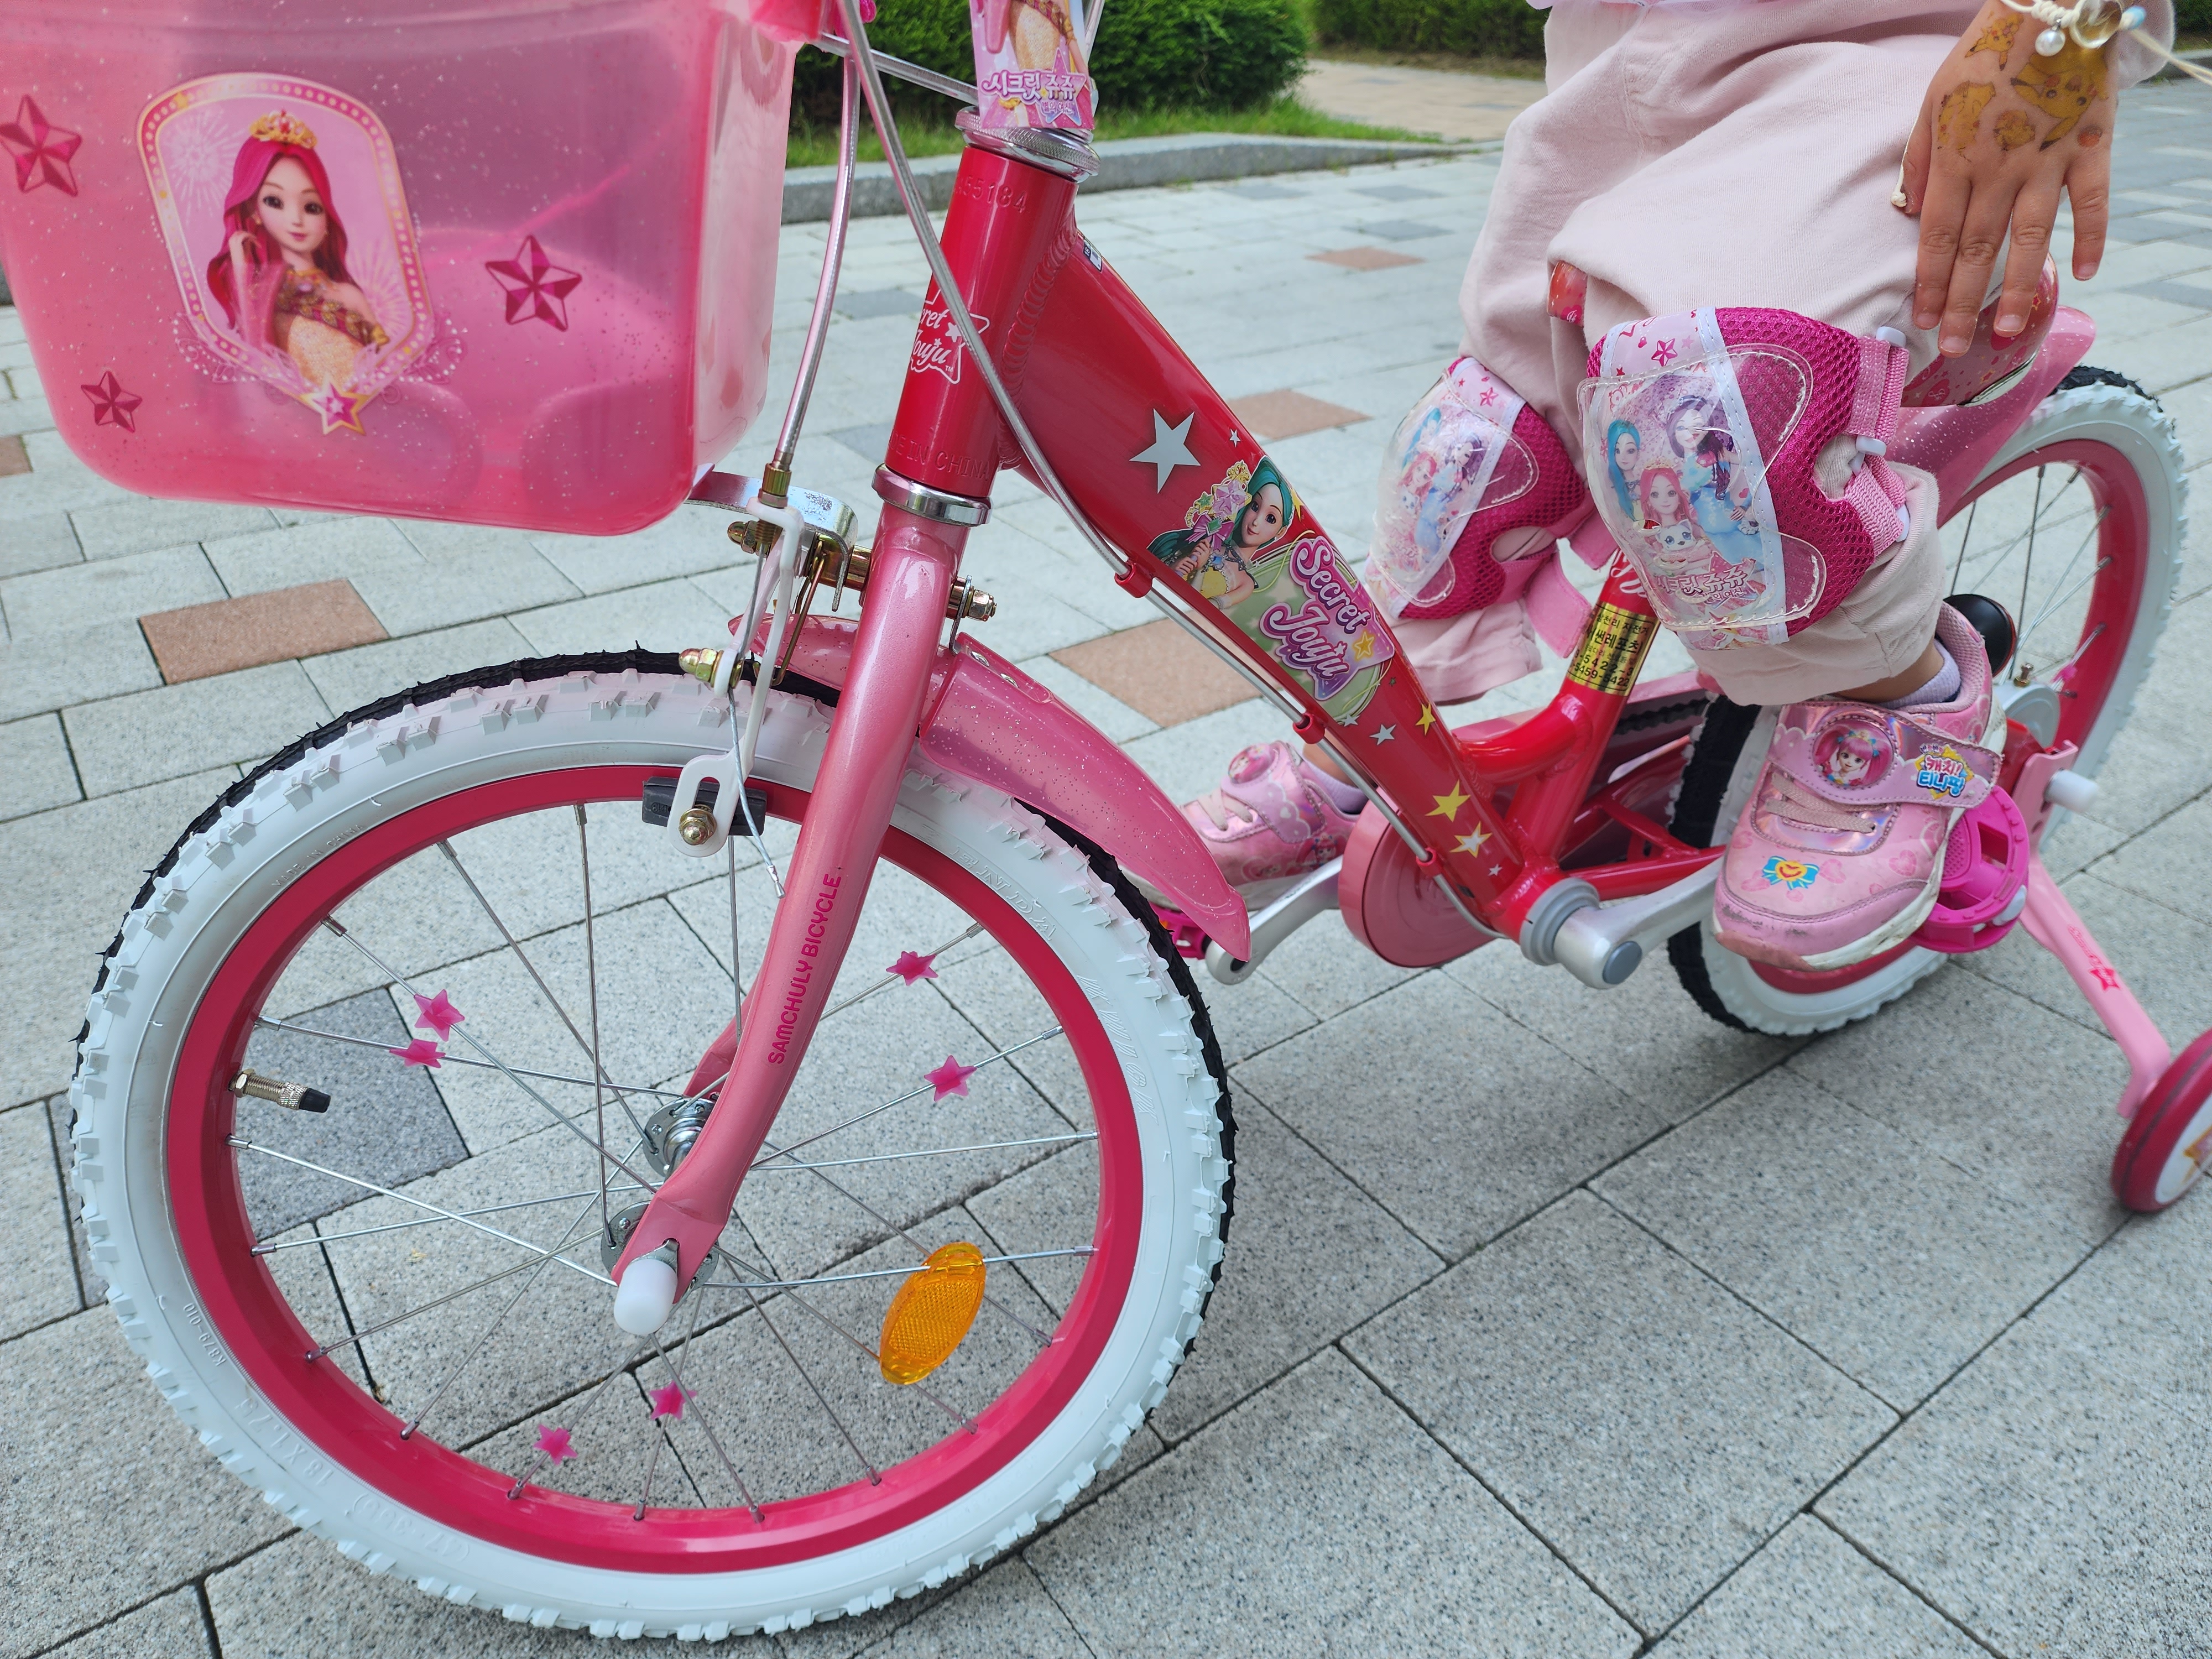 소프트한 재질의 자전거 바구니 사진